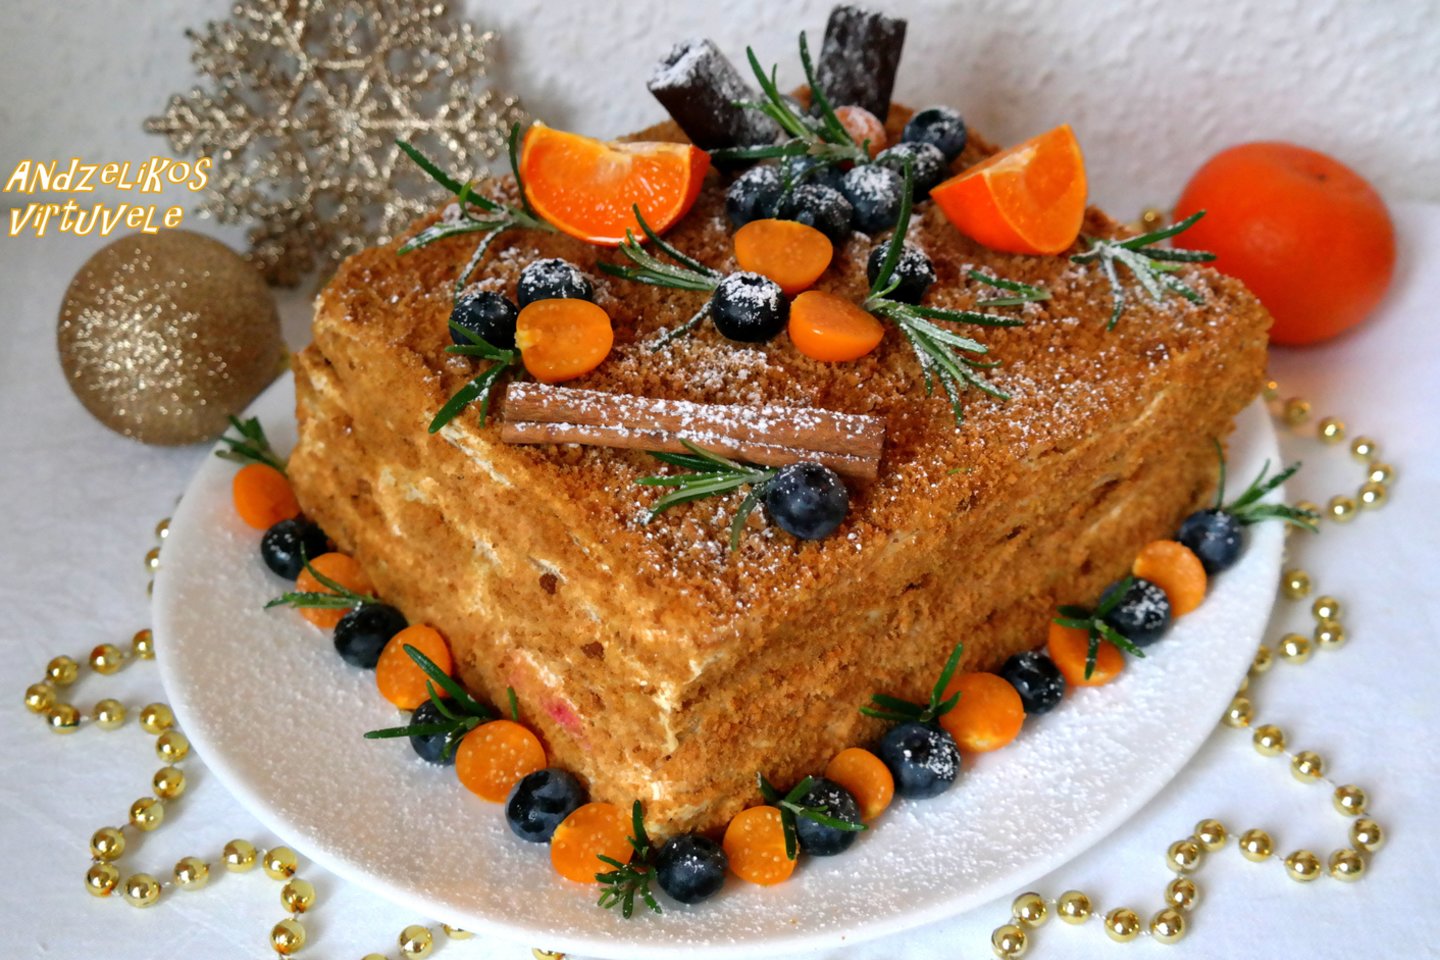  Medaus tortas su grietininiu kremu ir avietėmis.